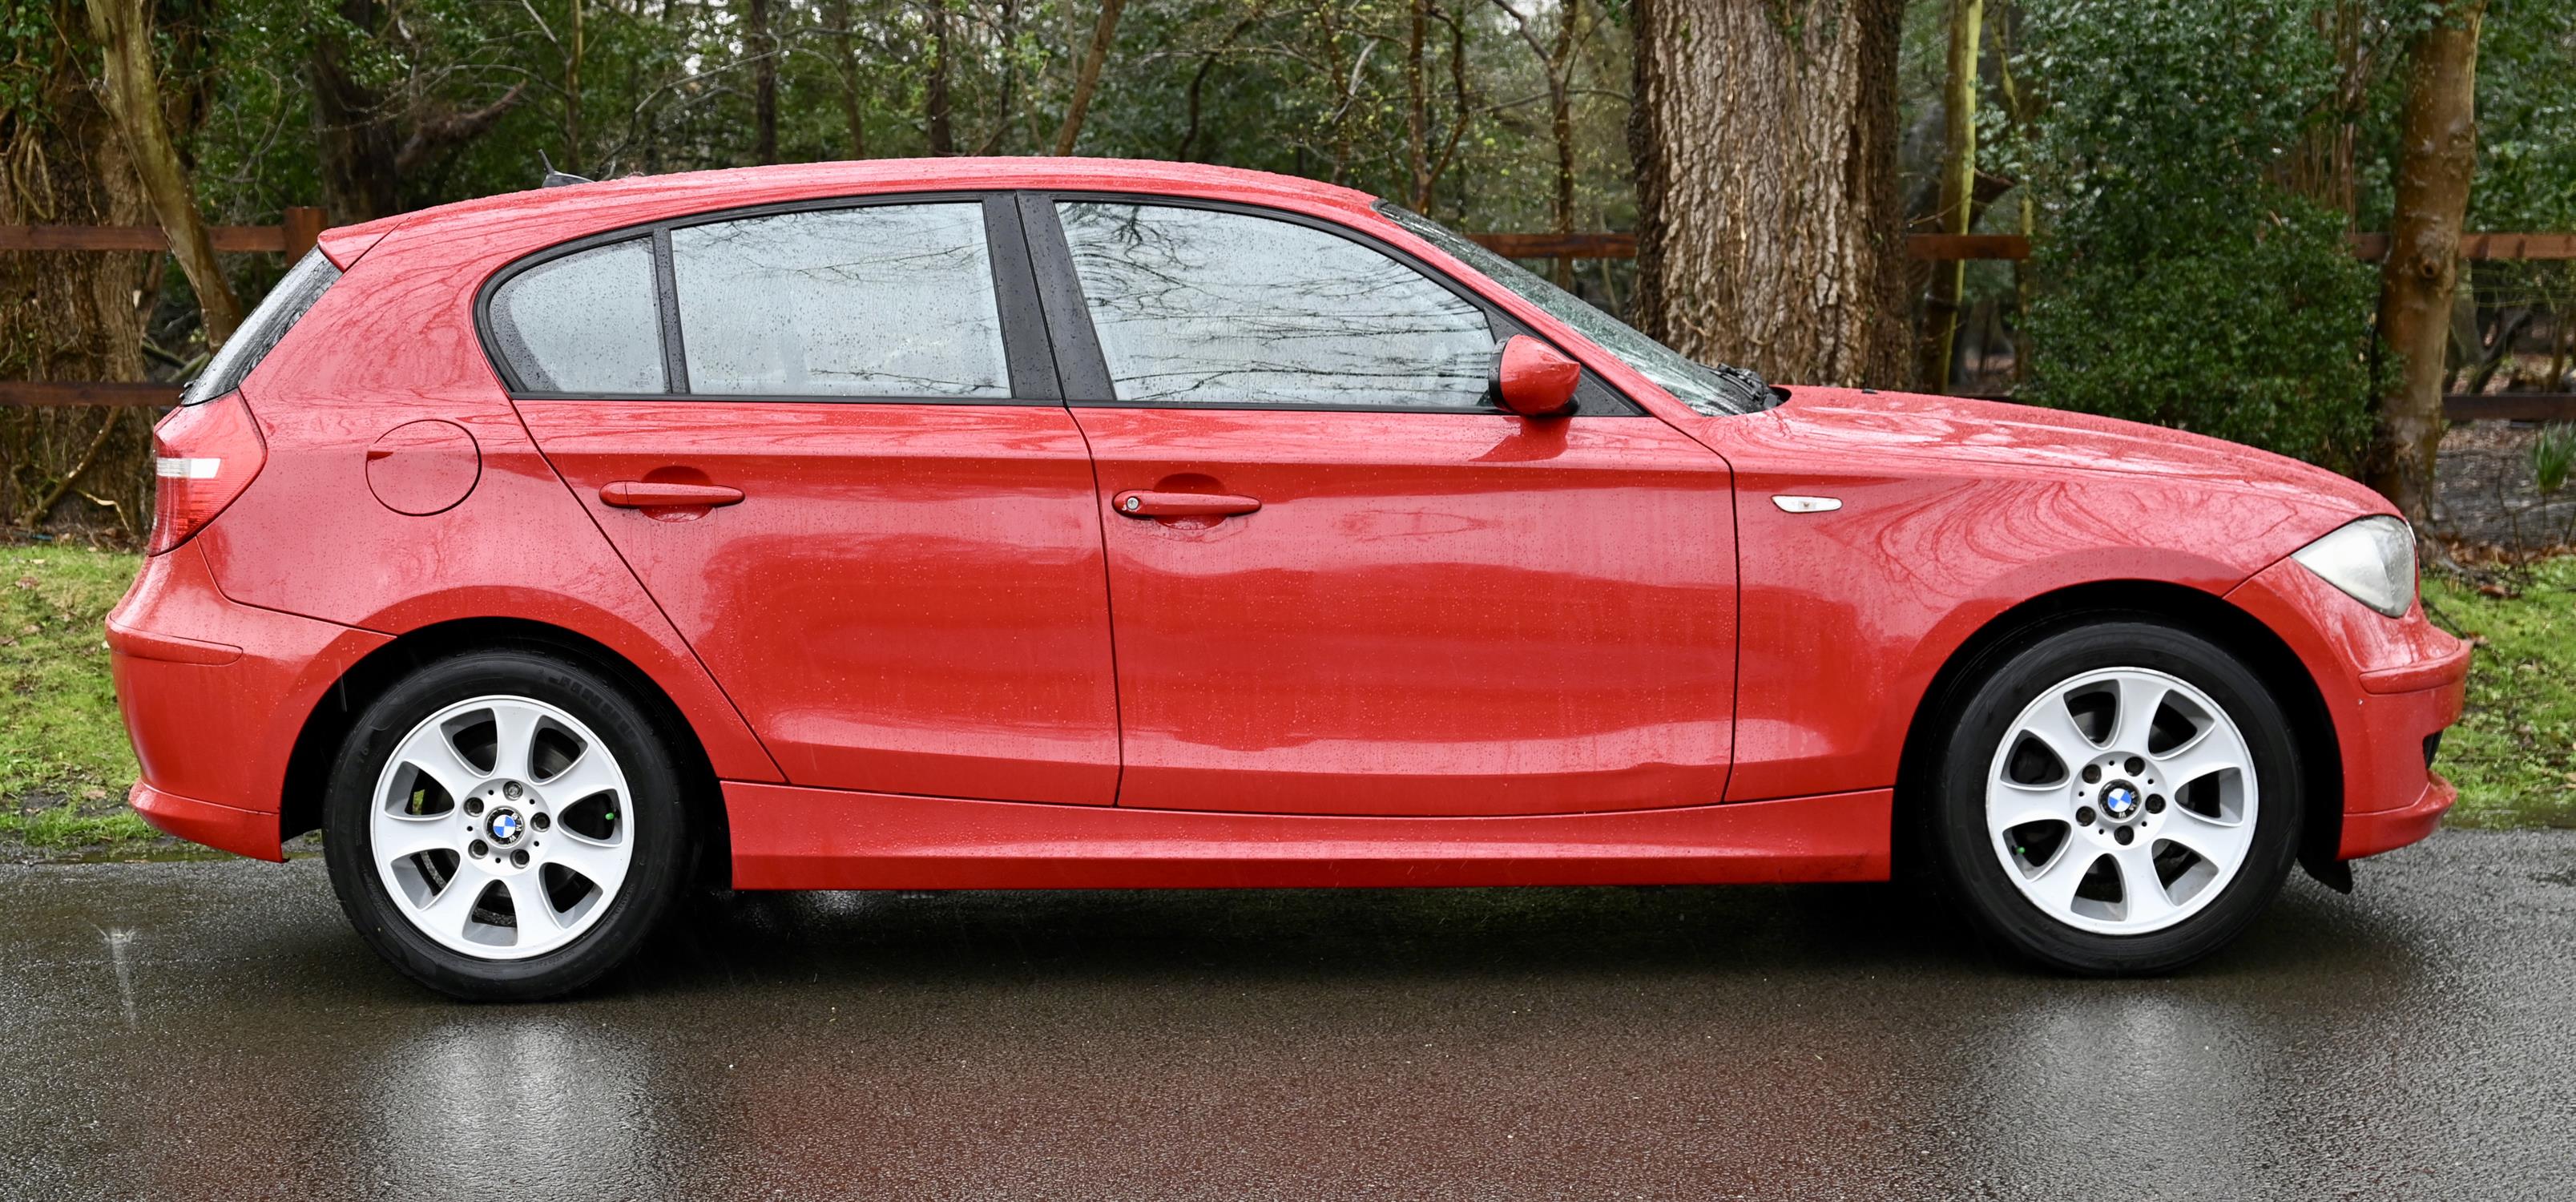 2007 BMW 116i 1597cc Petrol 5 Door Hatchback. Registration number: LD57 WNZ. Mileage: 142,600. - Image 6 of 12